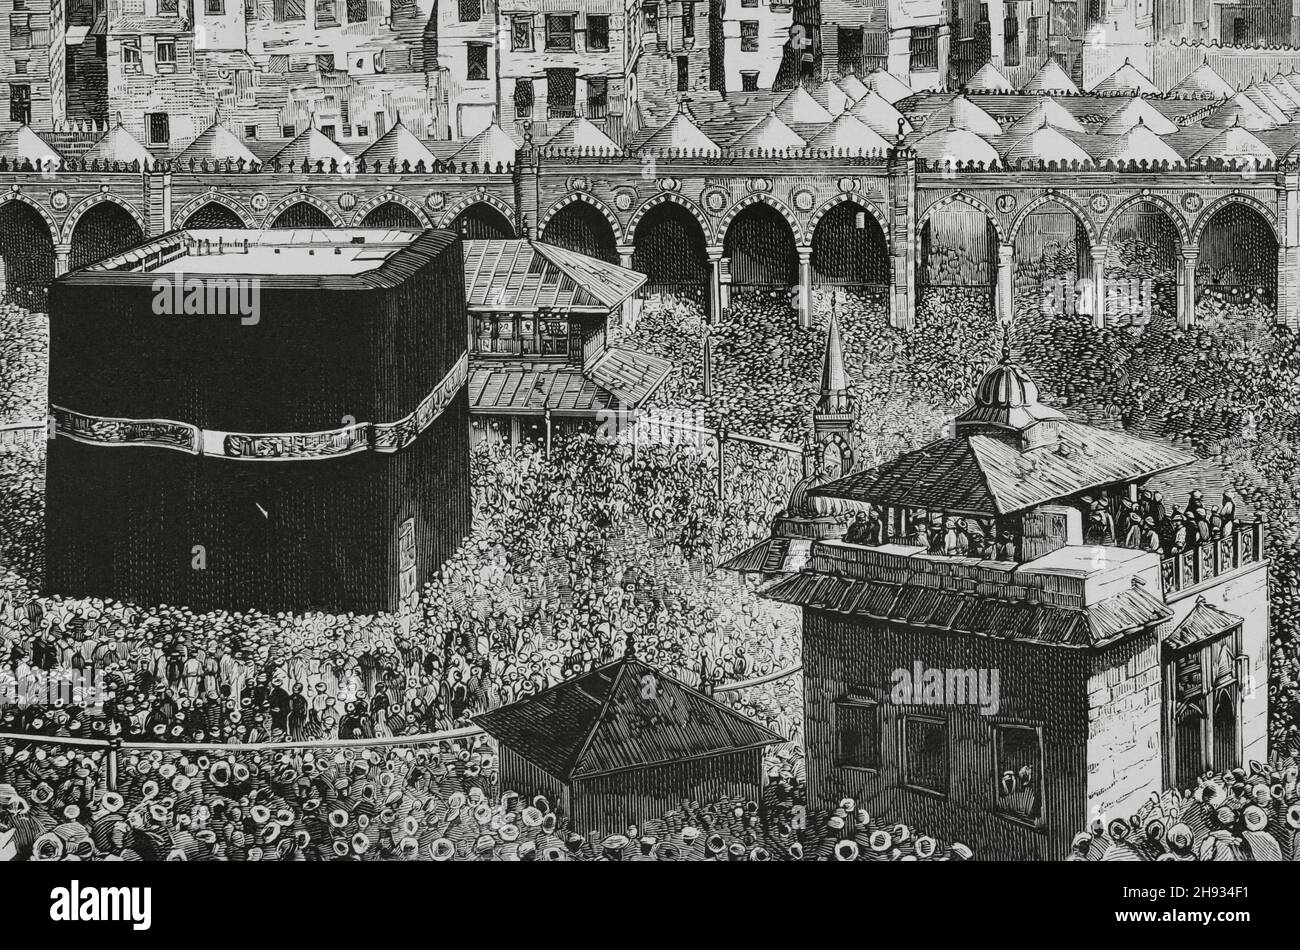 Saudi-Arabien, Mekka. Im Zentrum der al-Masjid al-Haram Moschee befindet sich die Kaaba, die den „Schwarzen Stein“ beherbergt. Gravur. Details. La Ilustración Española y Americana, 1882. Stockfoto